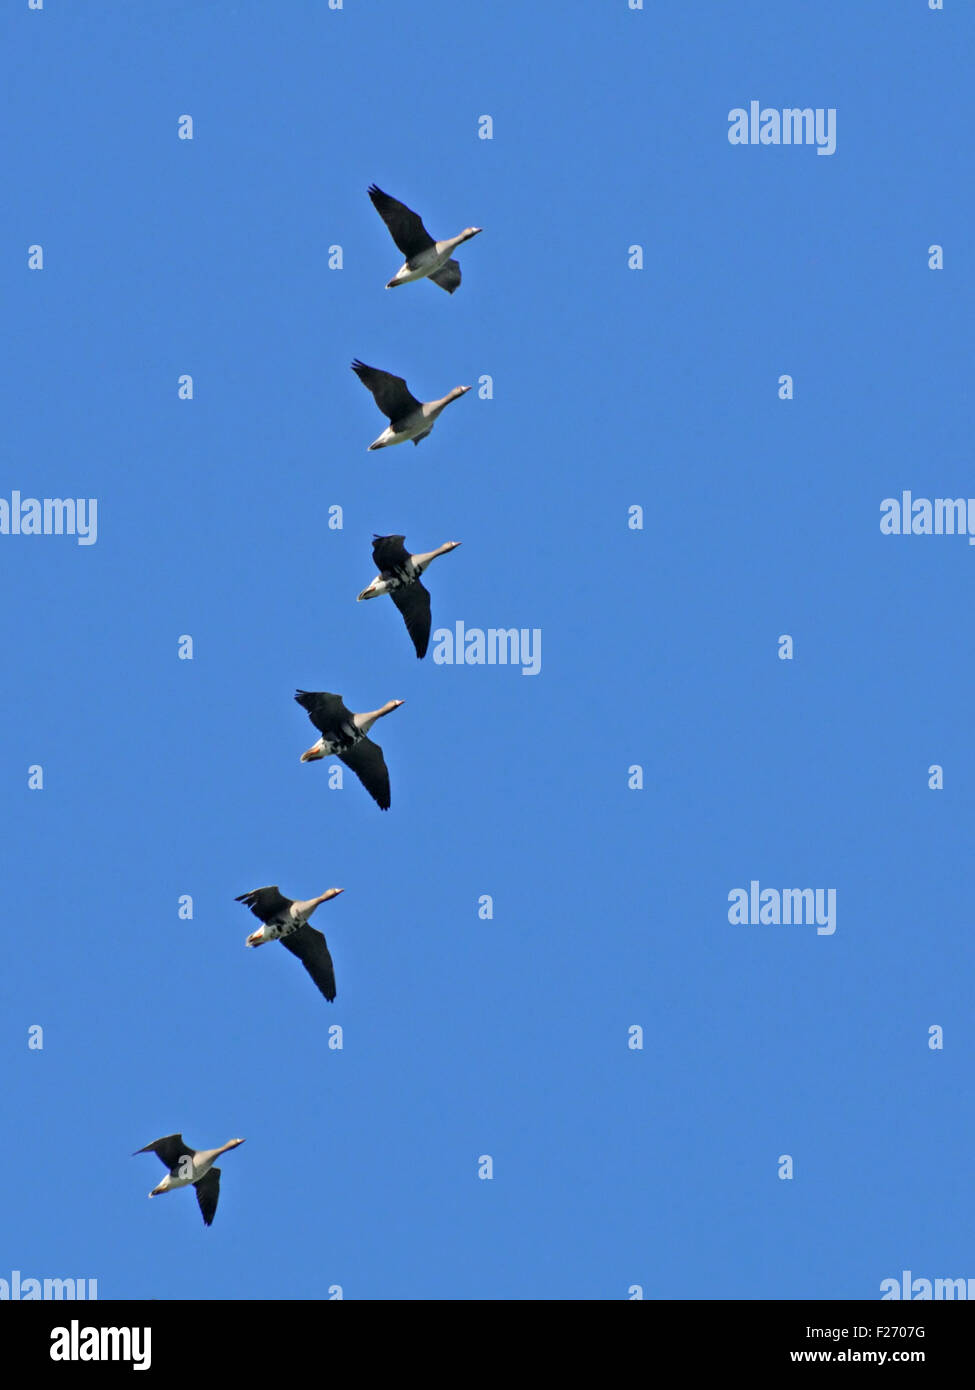 Flying bandada de gansos de fachada blanca durante la migración. Foto de stock